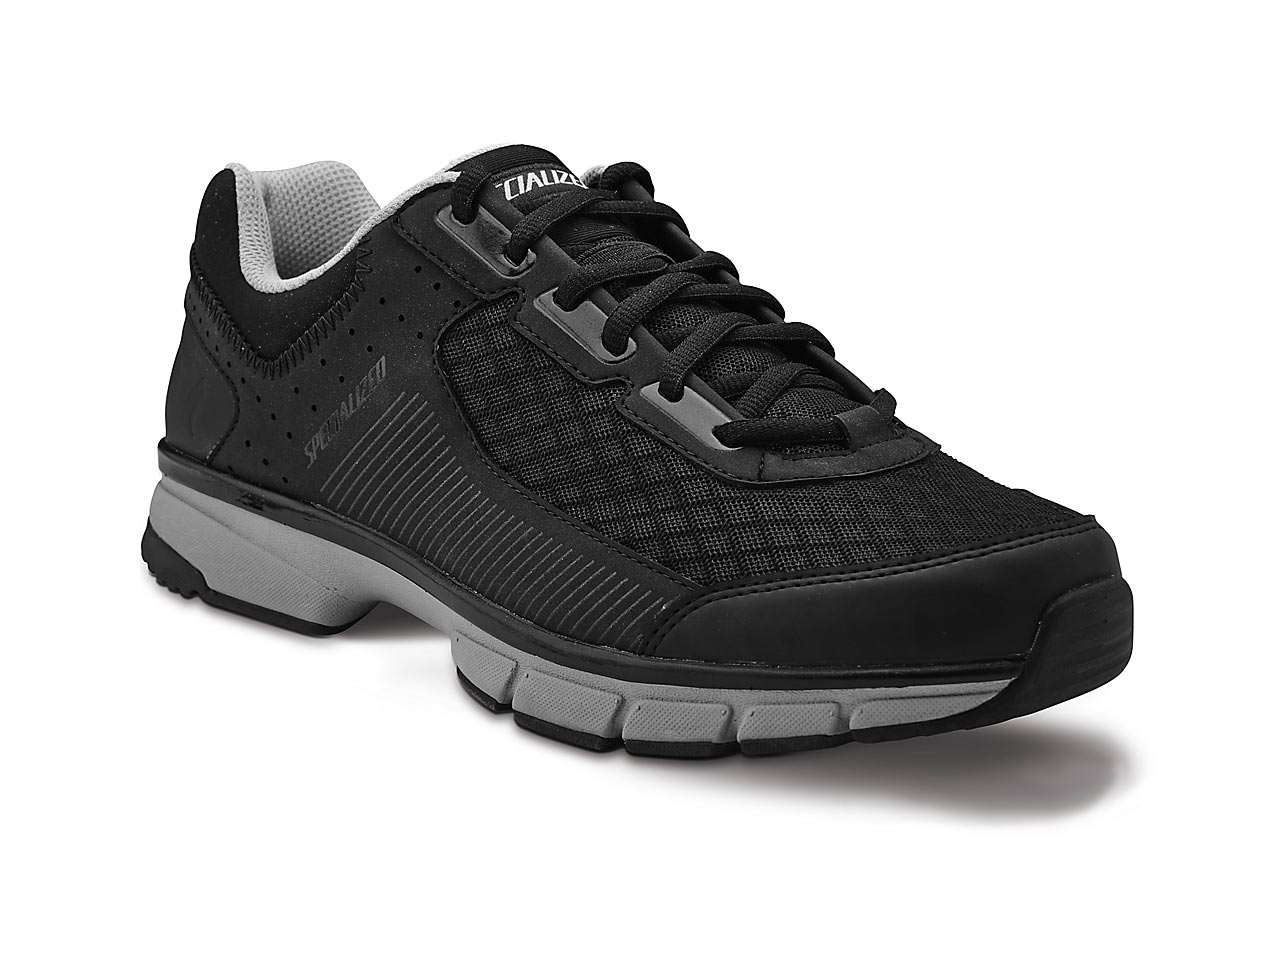 Παπούτσια Specialized Cadet - Black / Grey (42)